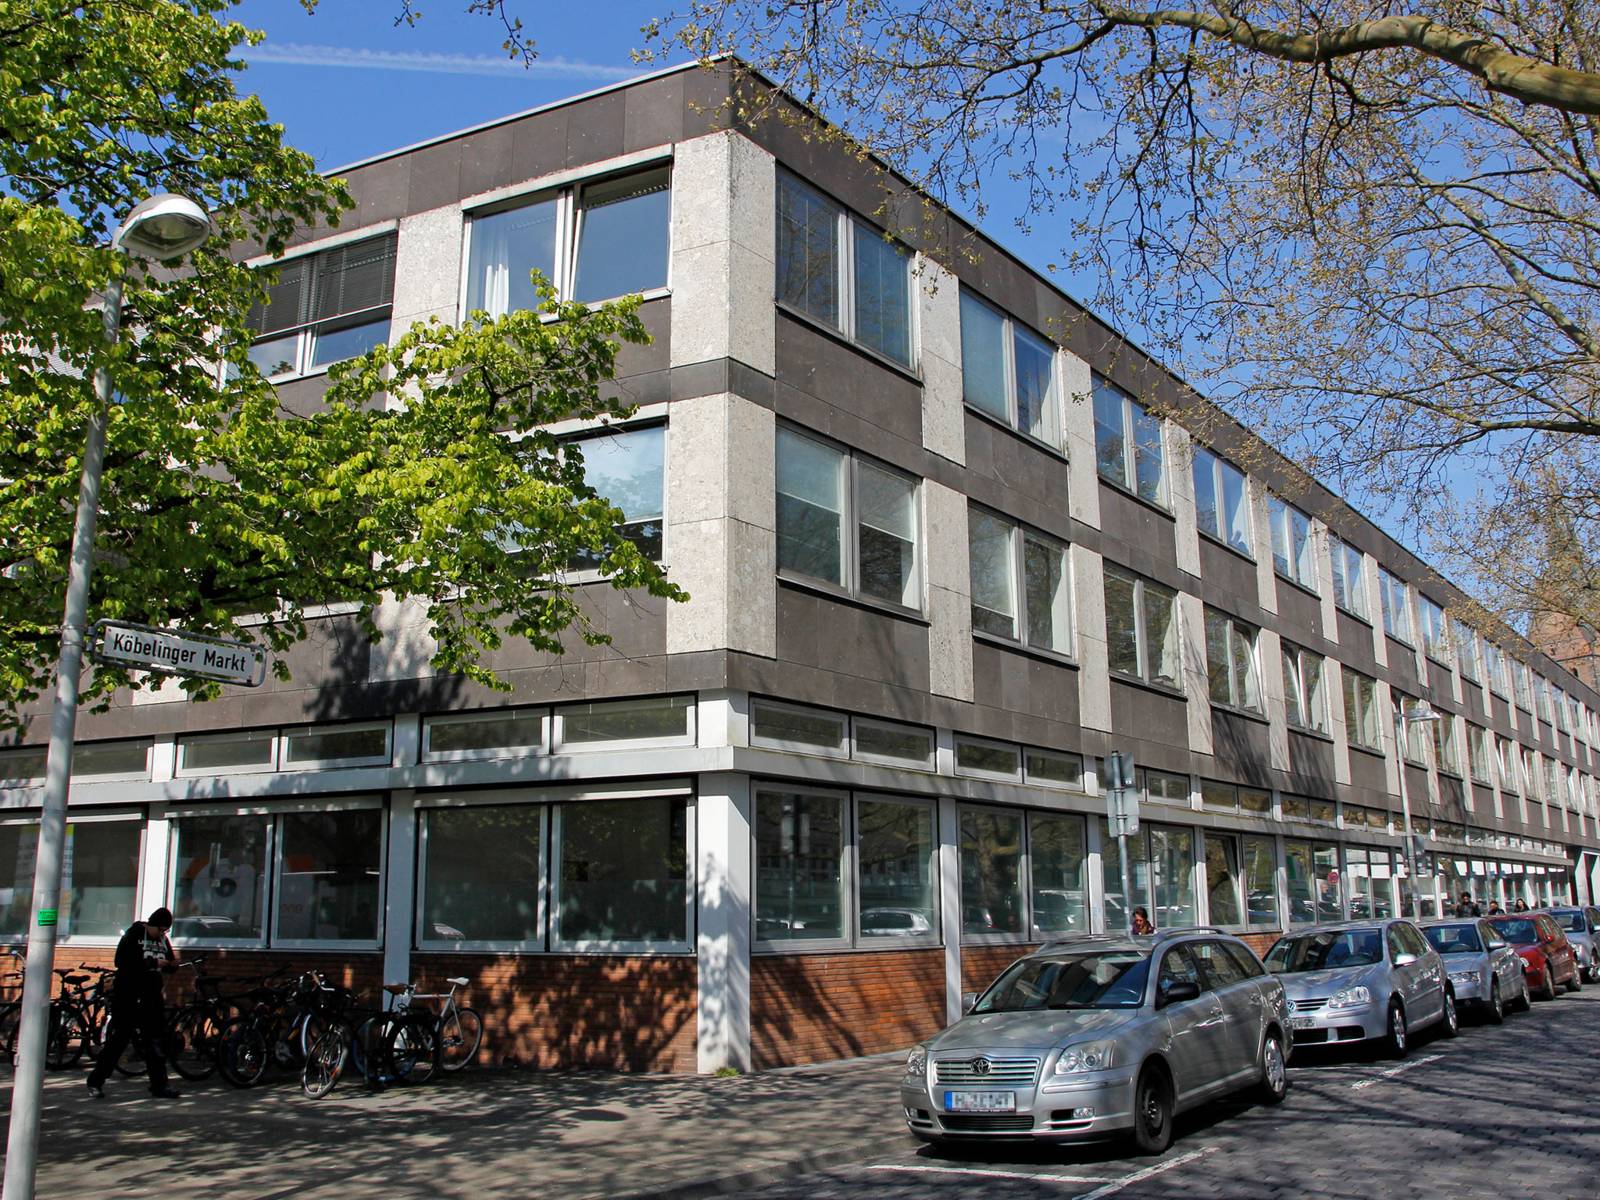 Dreistöckiges Gebäude an der Ecke Leinstraße/Köbelinger Markt mit parkenden Autos und Fahrrädern davor.